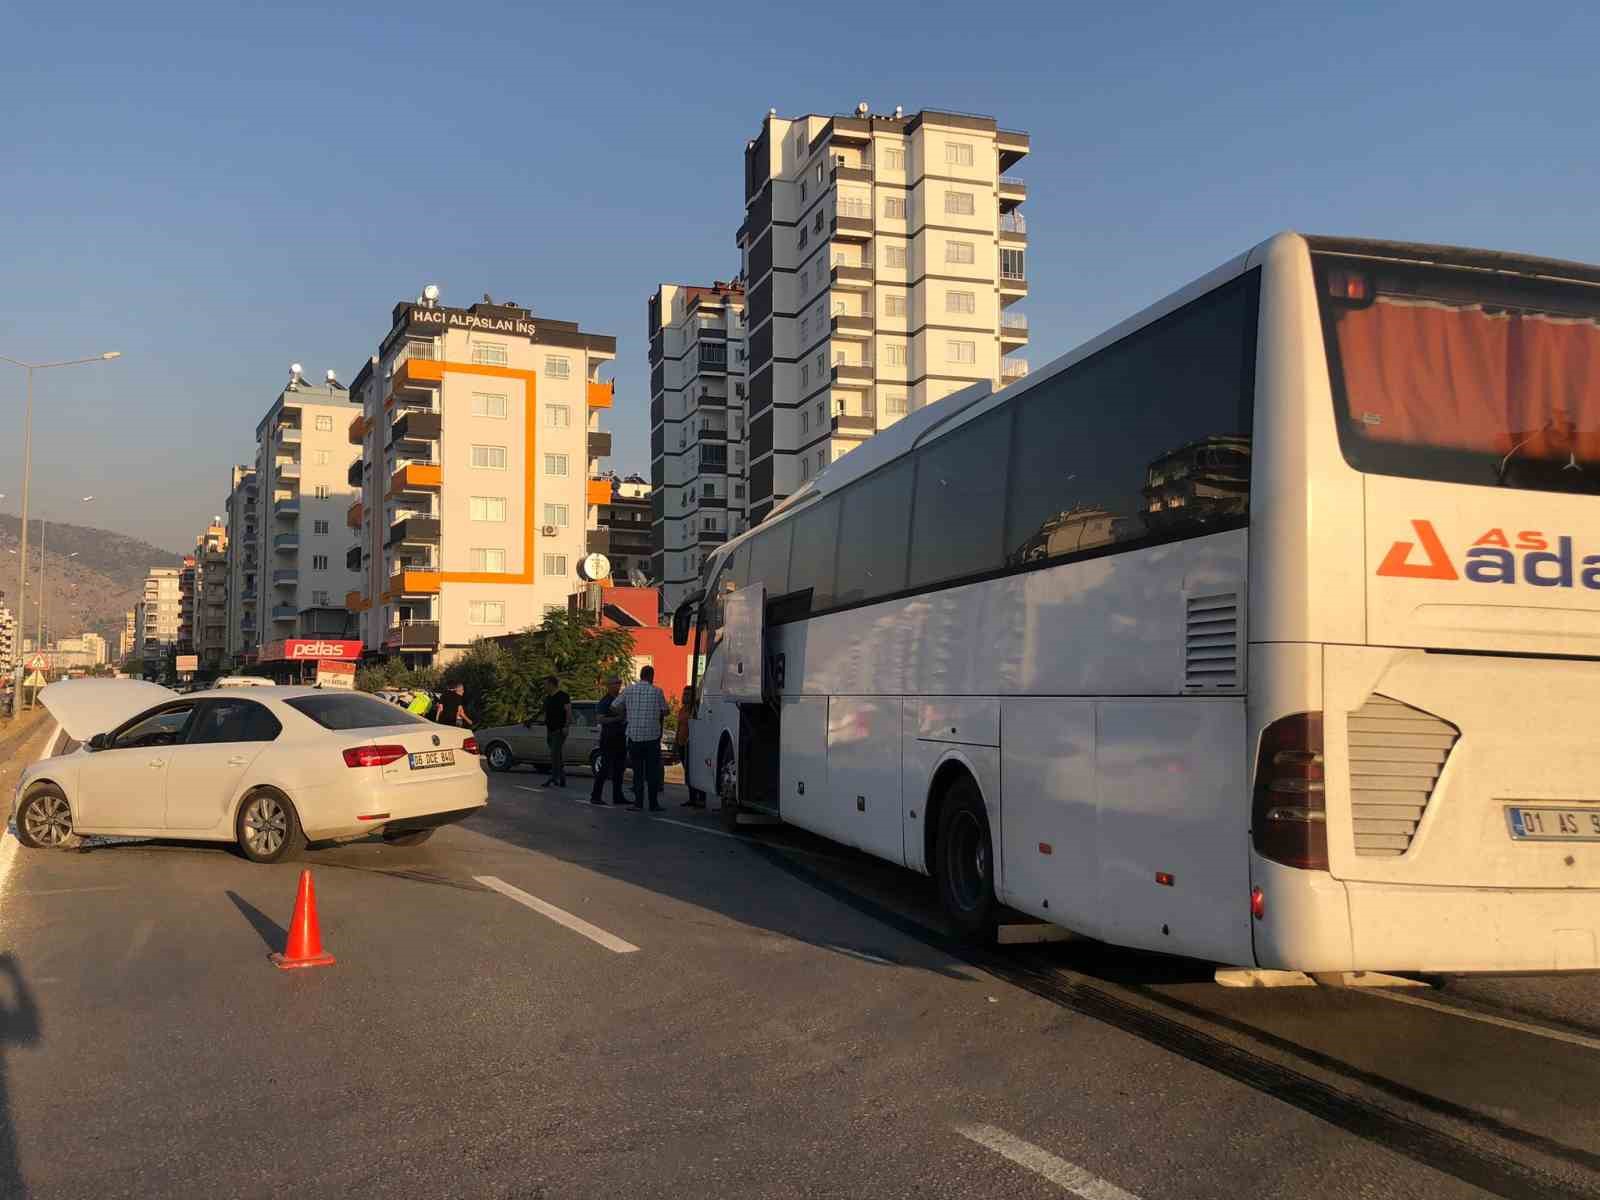 Adana’da otomobil yolcu otobüsü ile çarpıştı: 1 yaralı